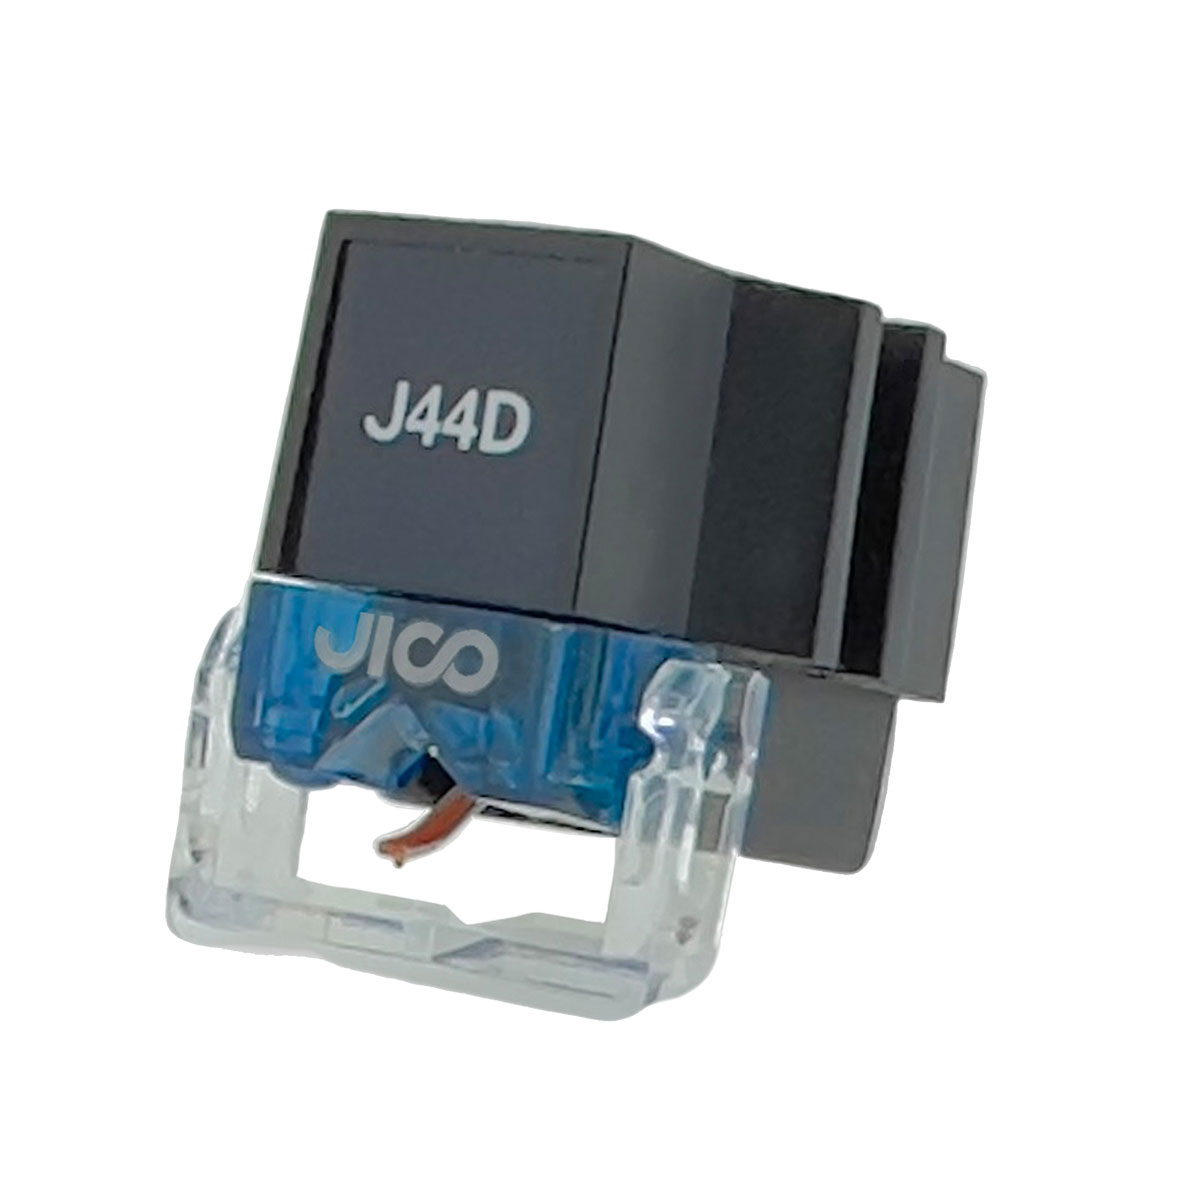 JICO J44D-DJ-SD